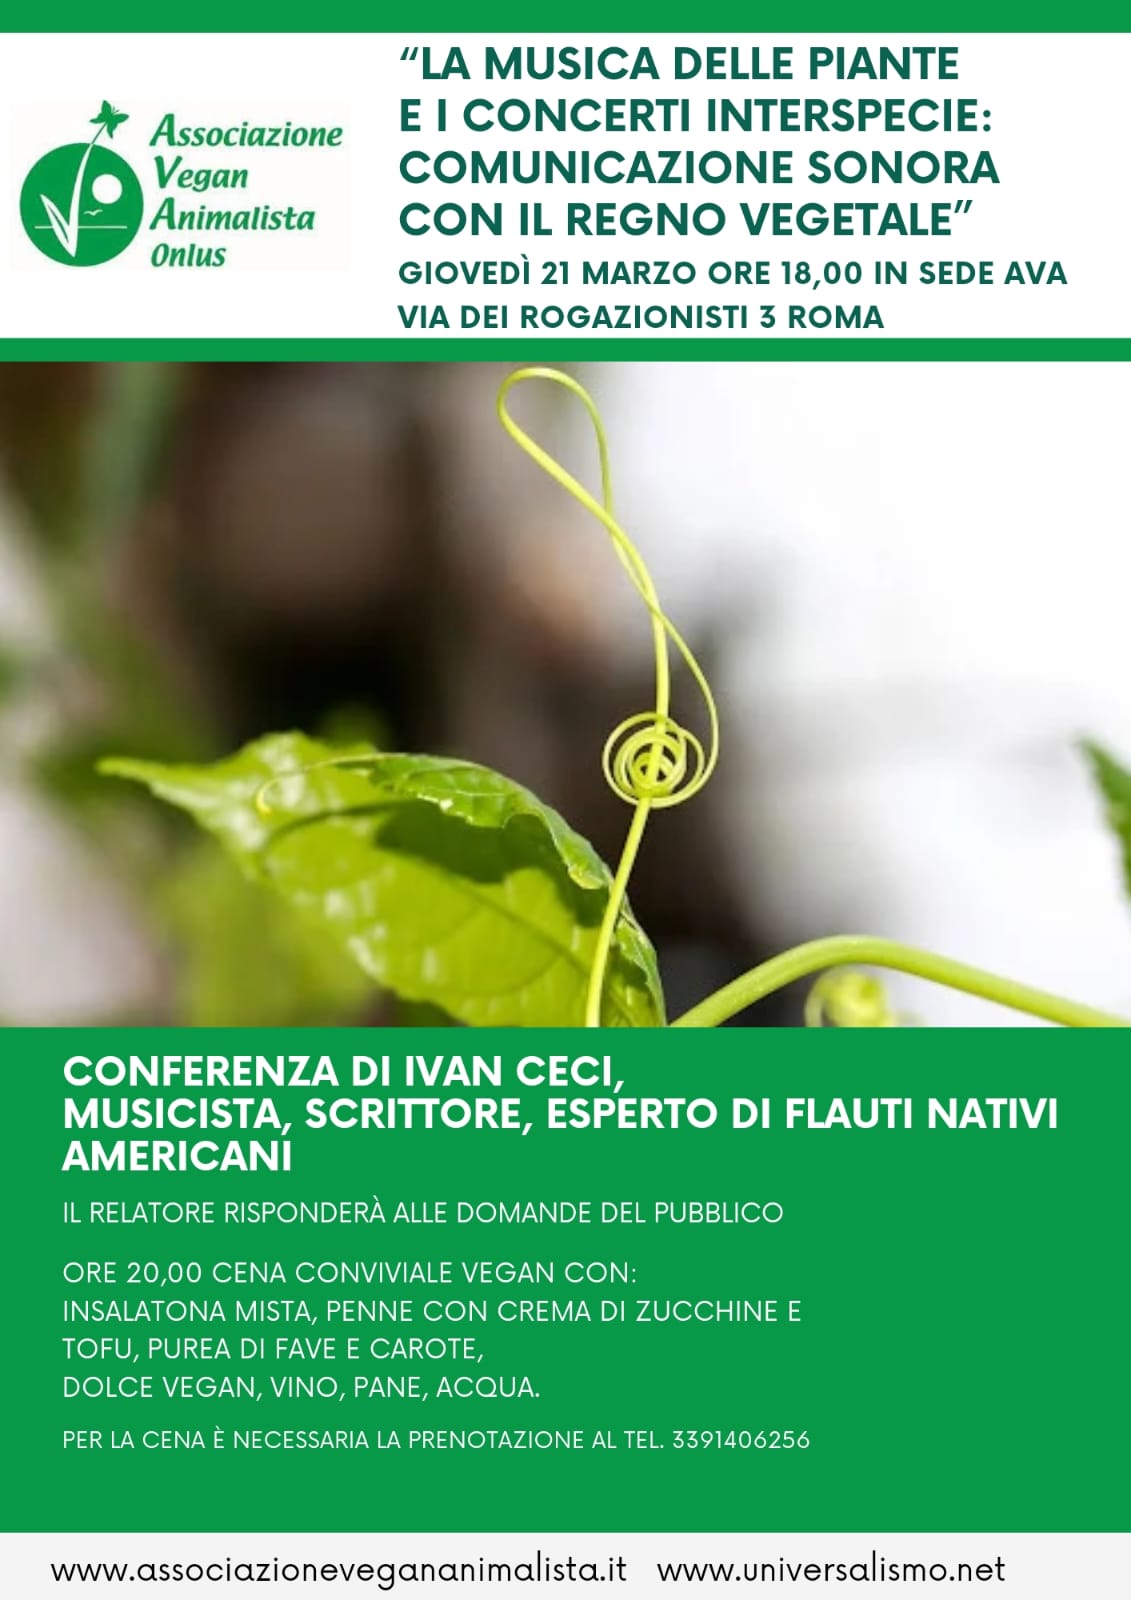 La musica delle piante e i concerti interspecie: comunicazione sonora con il regno vegetale